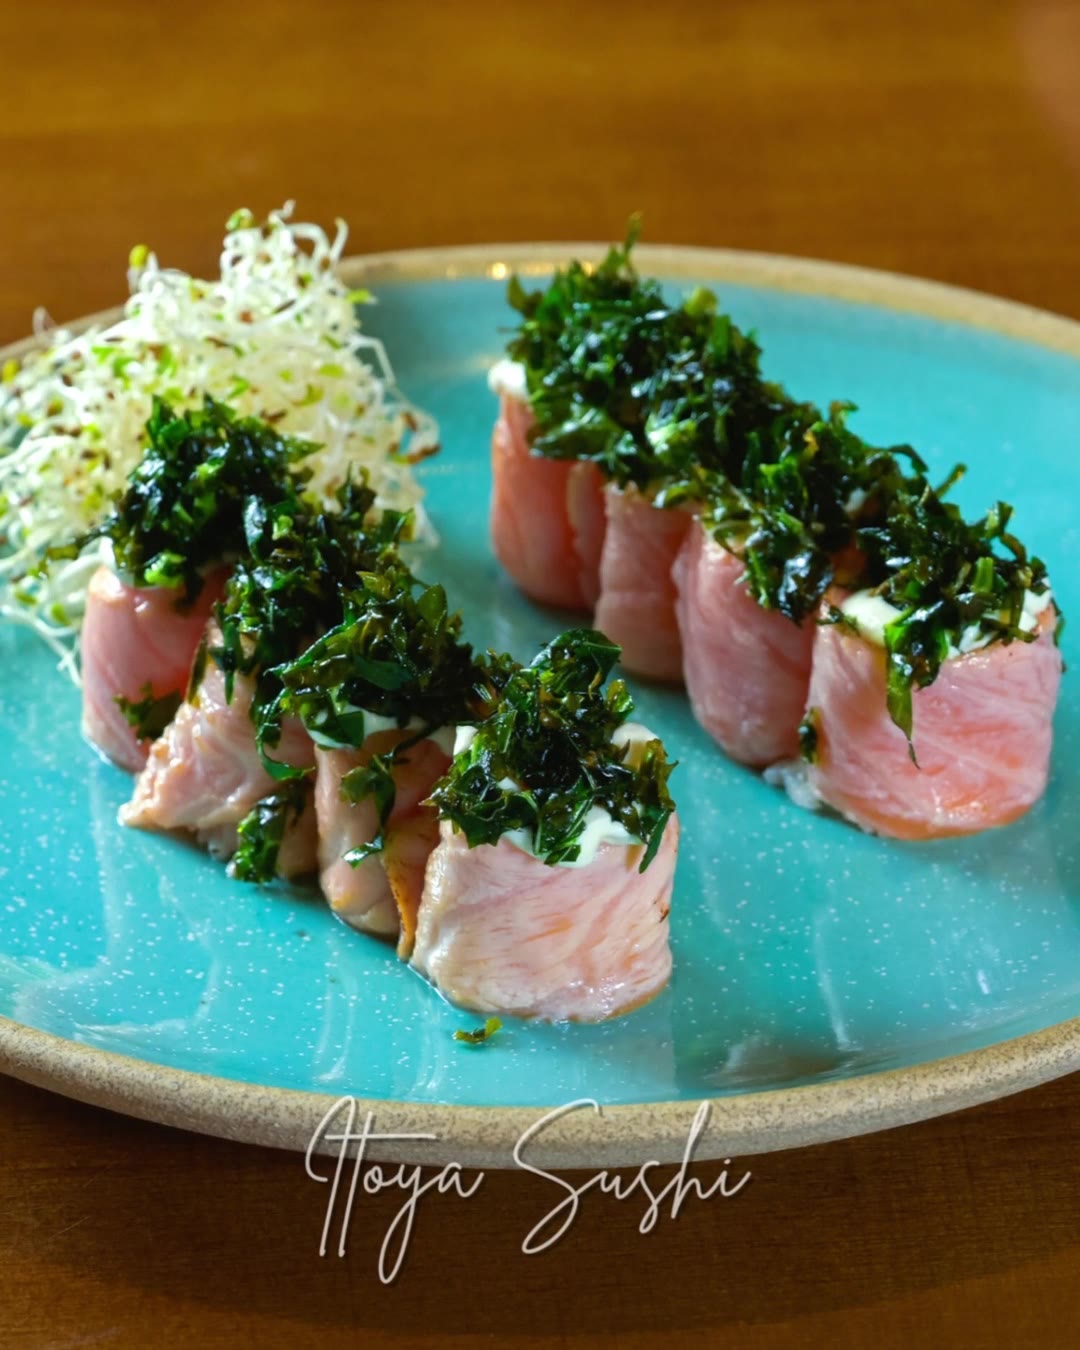 exemplo - chefão sushi (18)